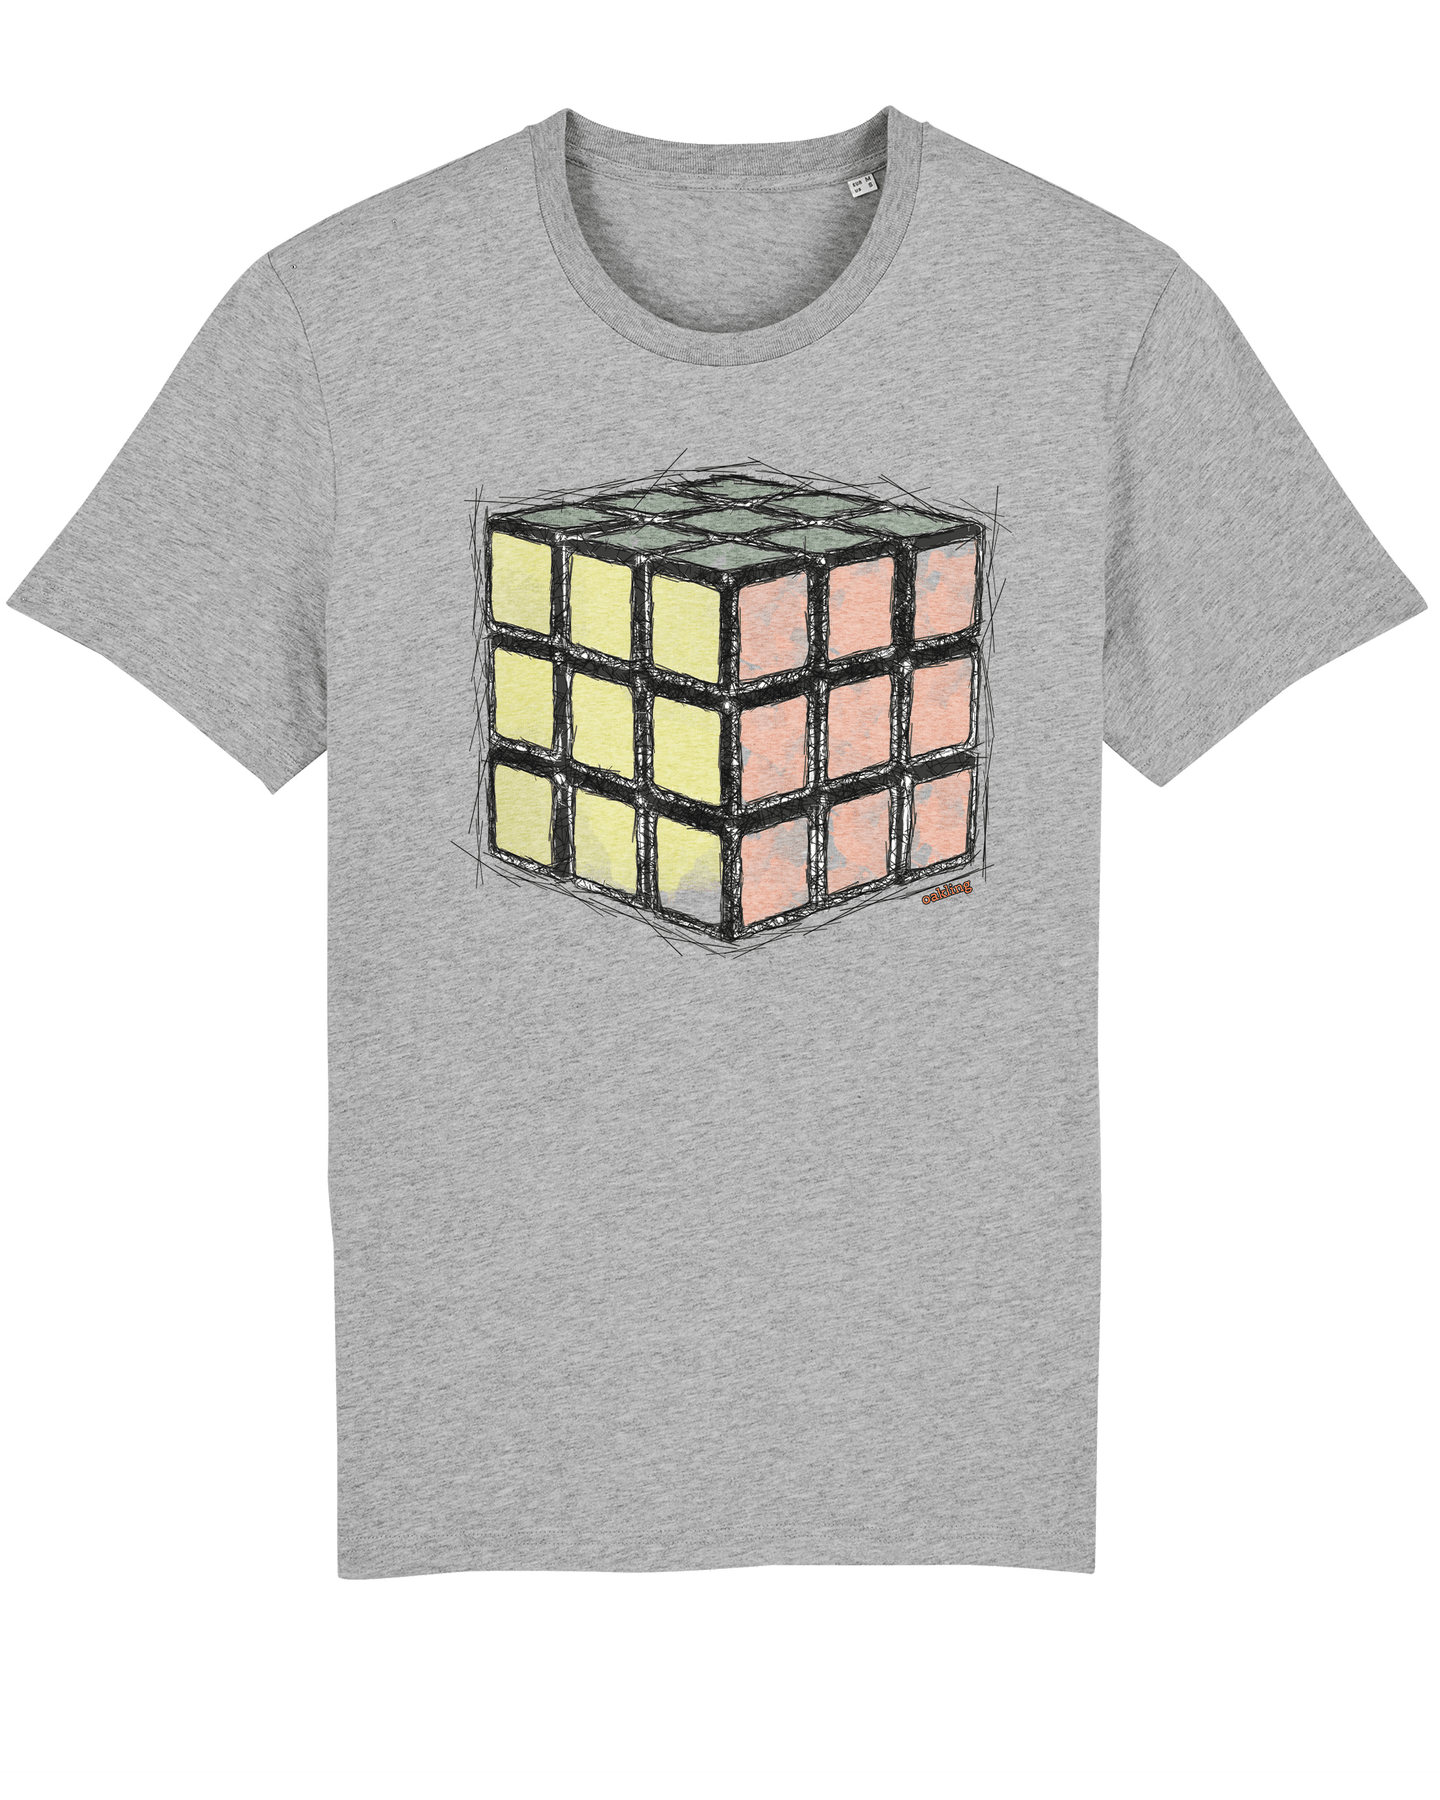 Organic Shirt - The Rubic